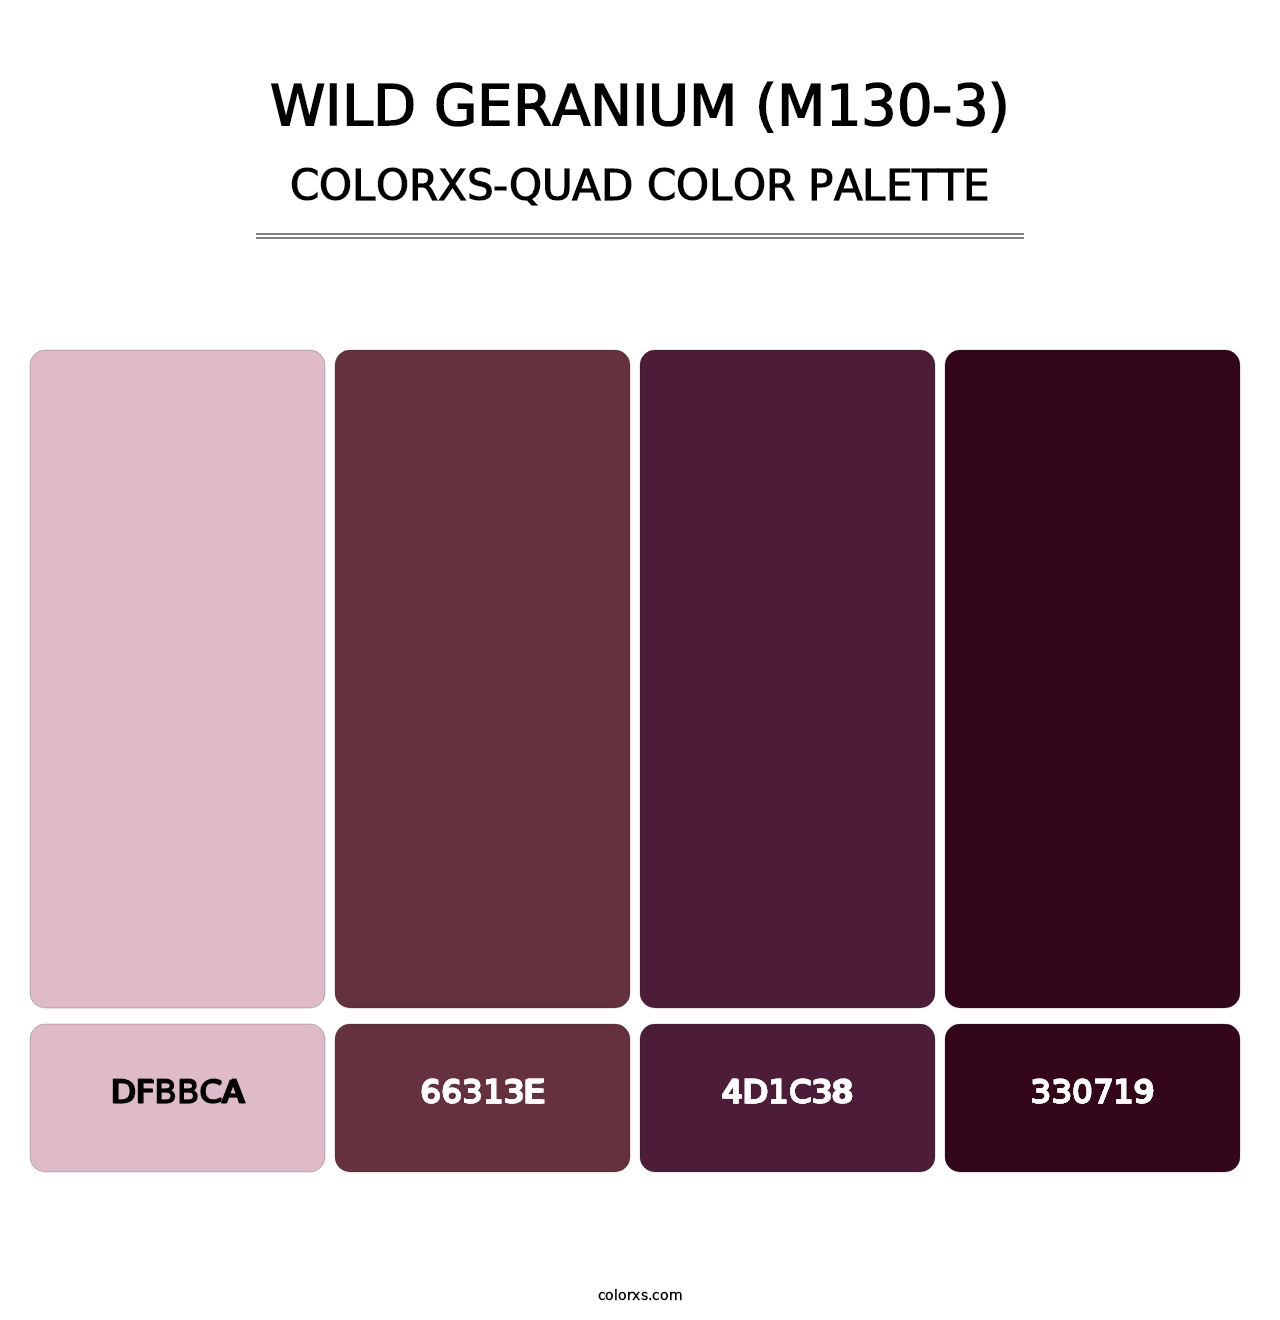 Wild Geranium (M130-3) - Colorxs Quad Palette